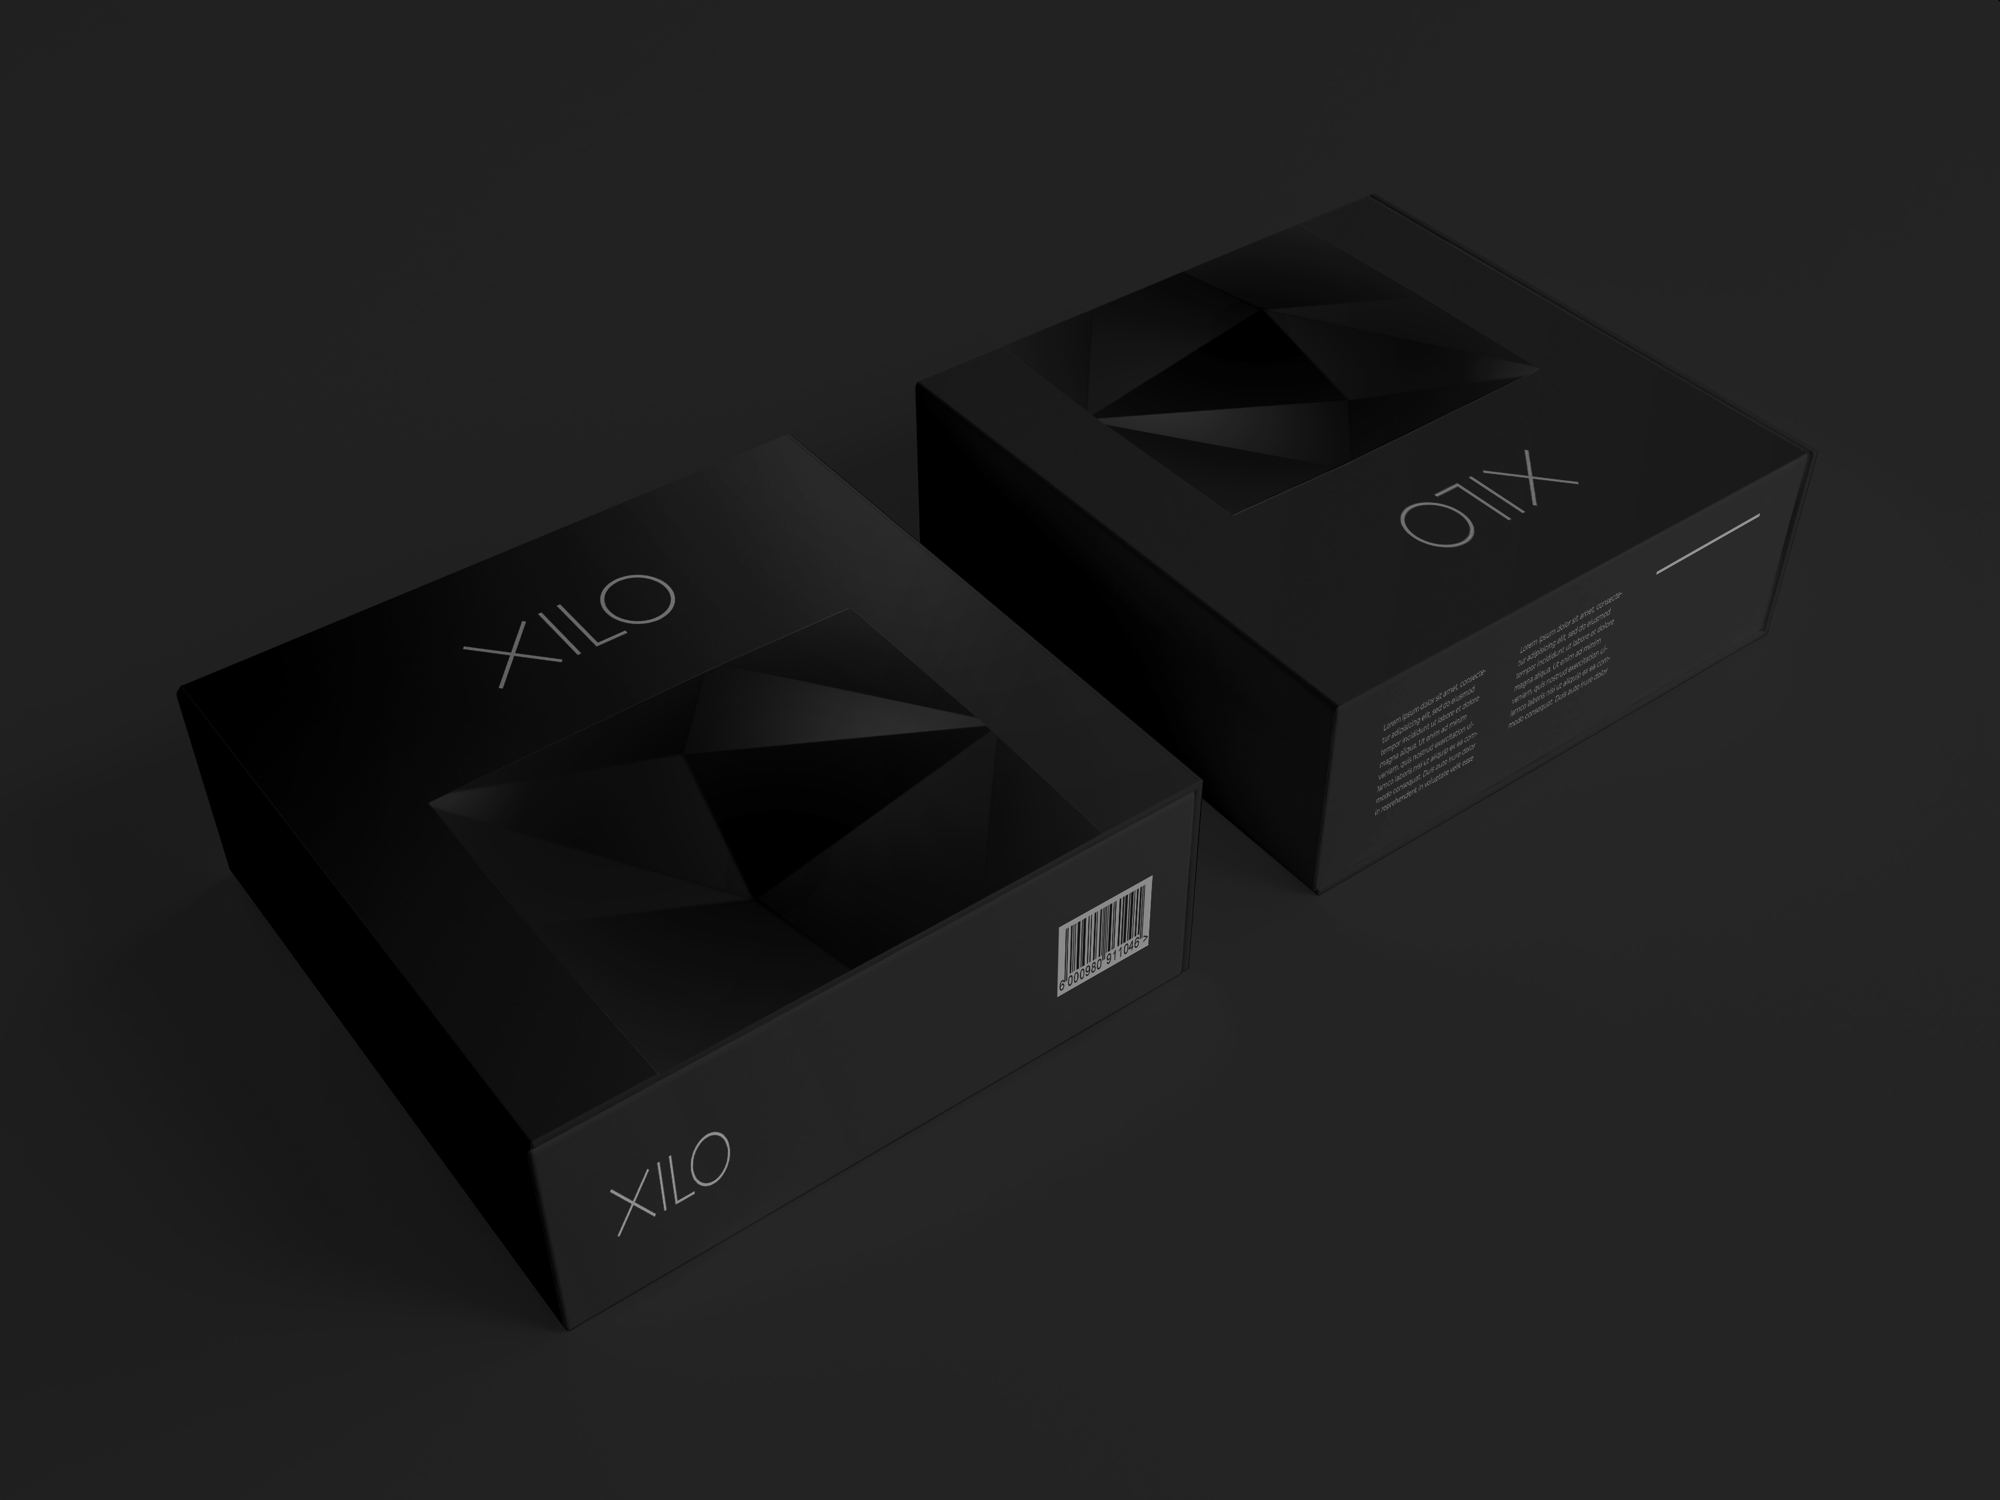 Дизайн упаковки для роутера XILO